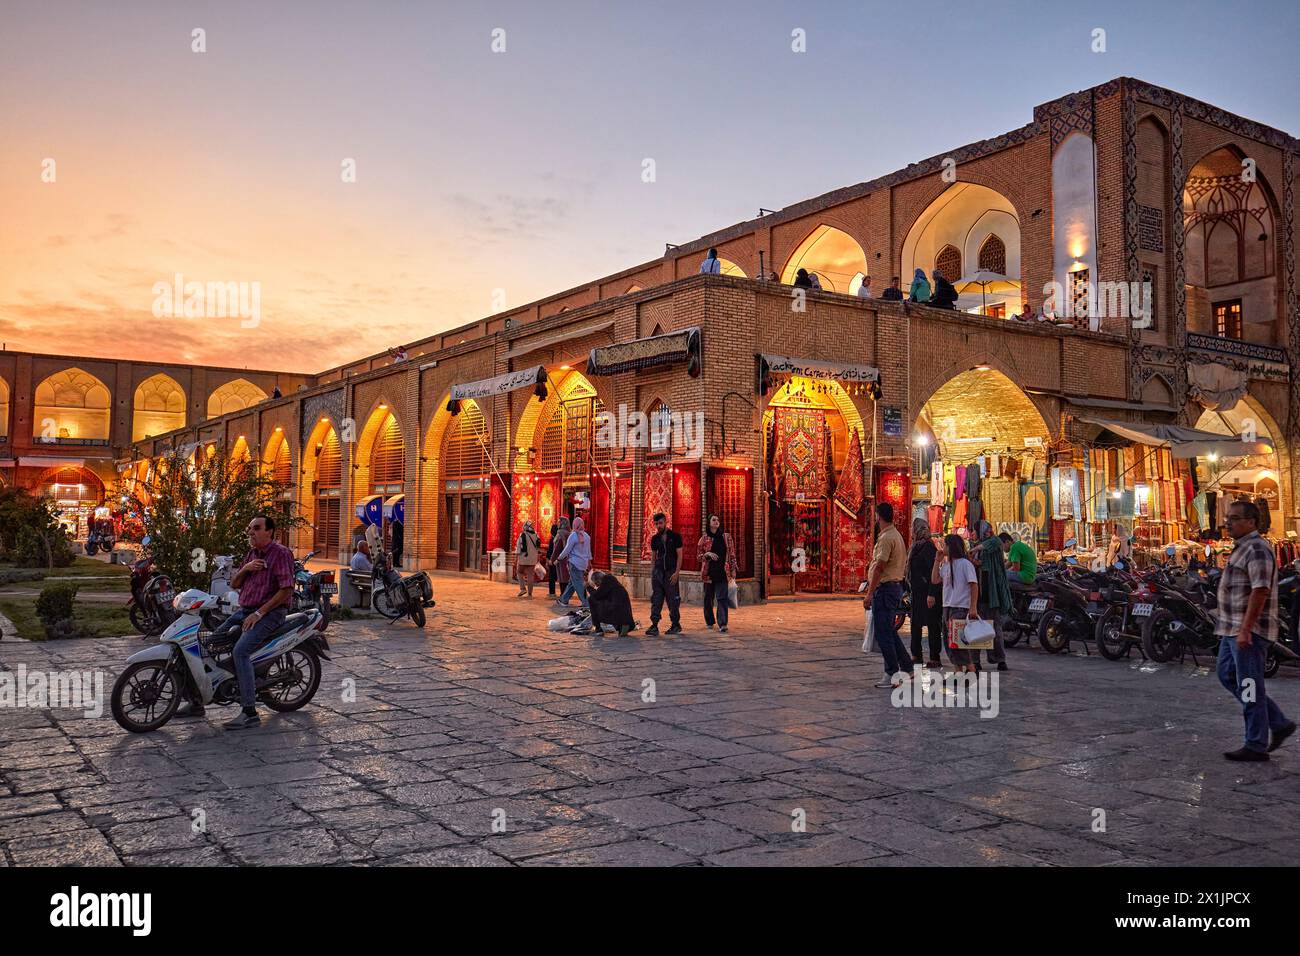 People walk in Naqsh-e Jahan Square illuminated at dusk. Isfahan, Iran. Stock Photo